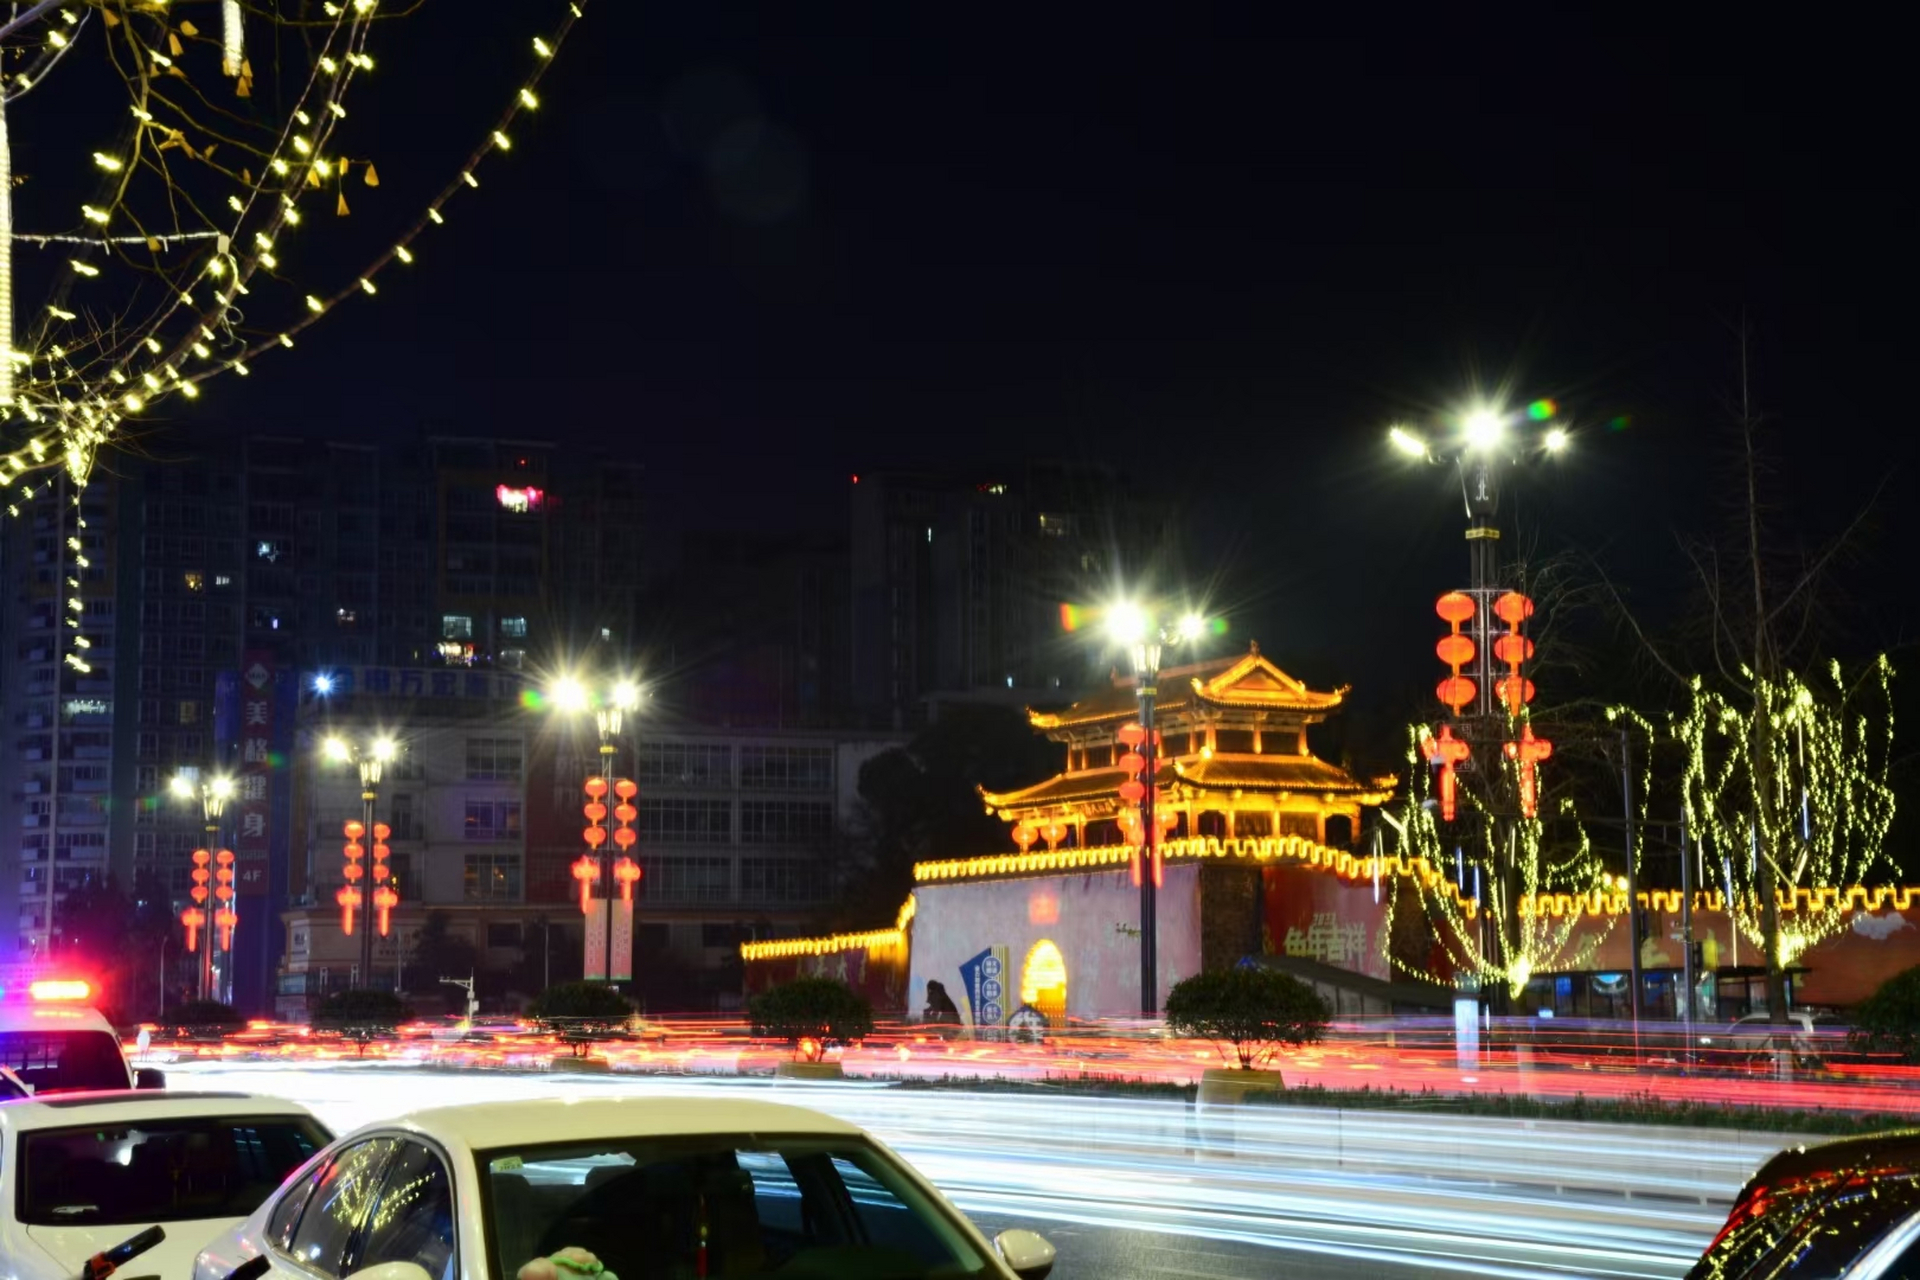 广汉夜景图片